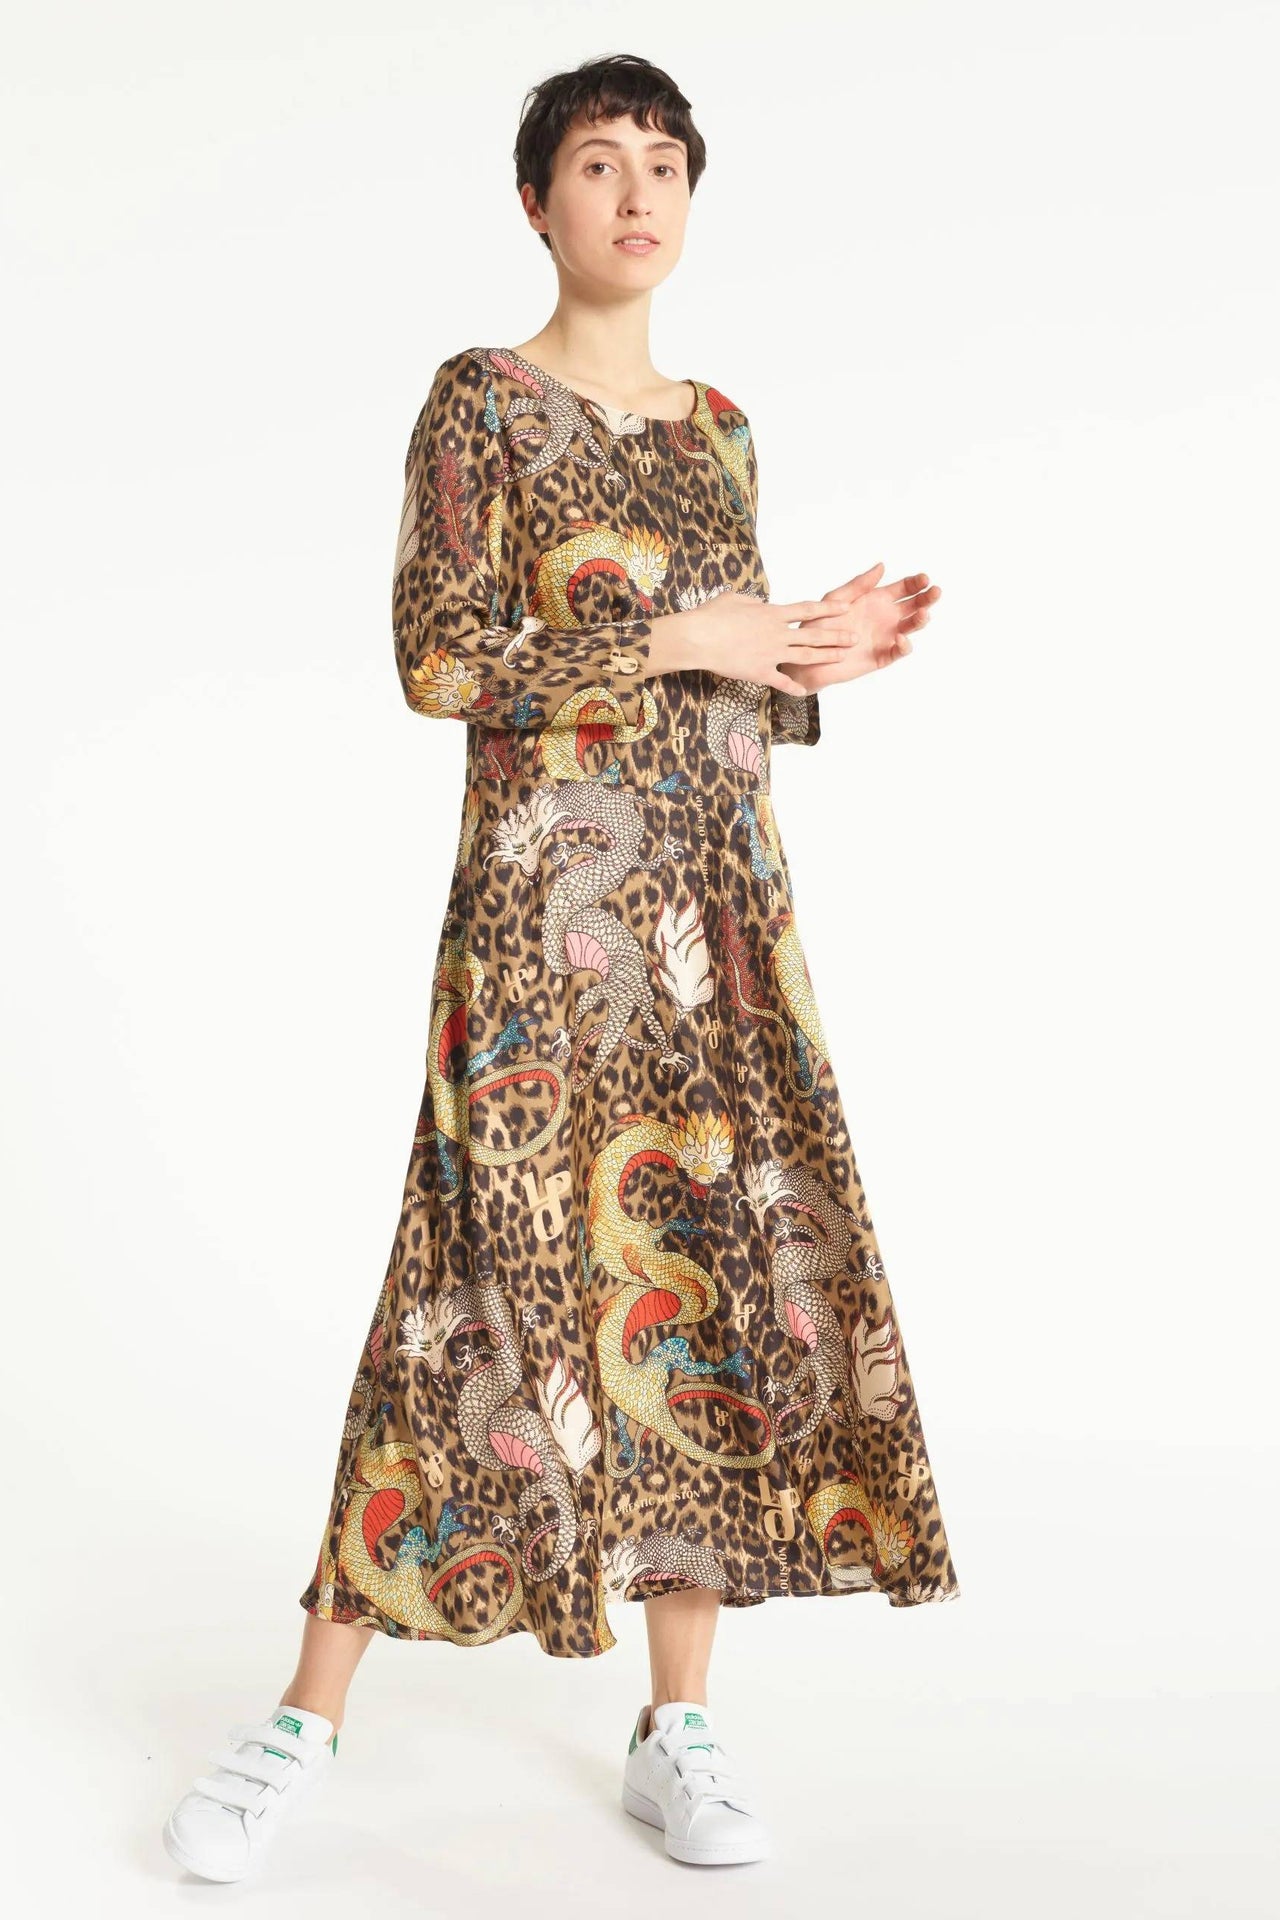 Despres Dress Mix Dragons Panthere-Dress-La Prestic Ouiston-Debs Boutique